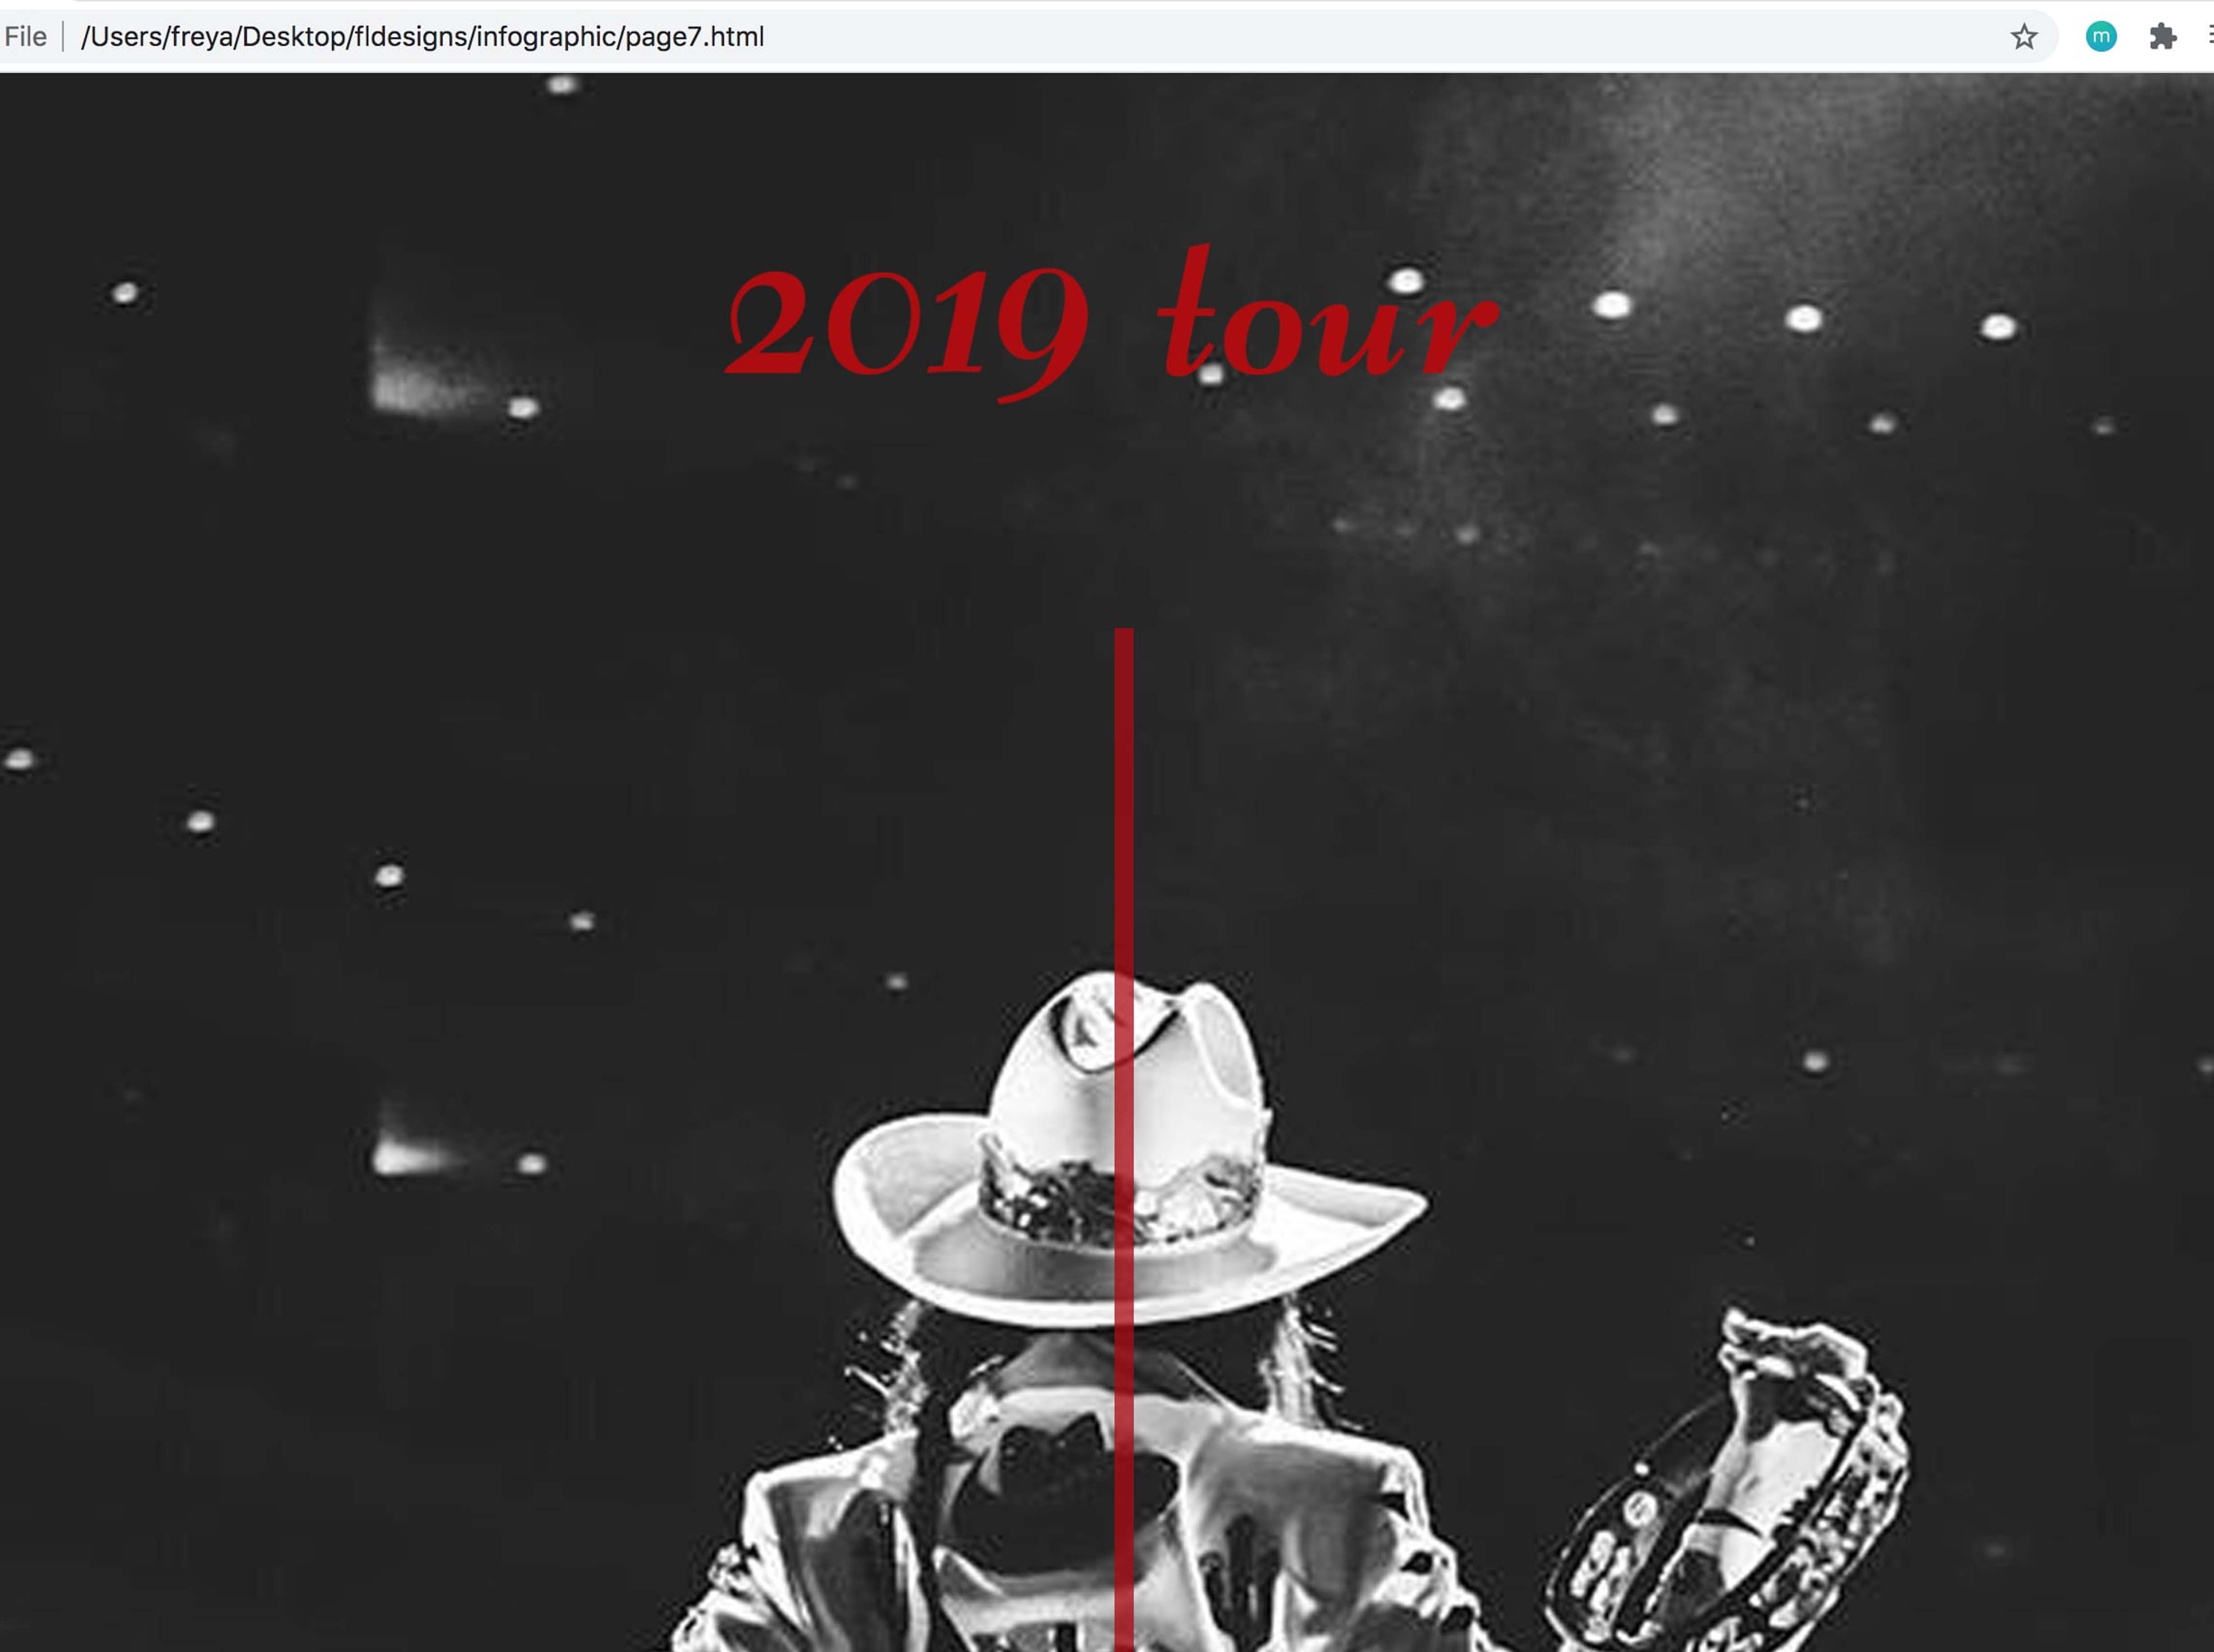 2019 tour